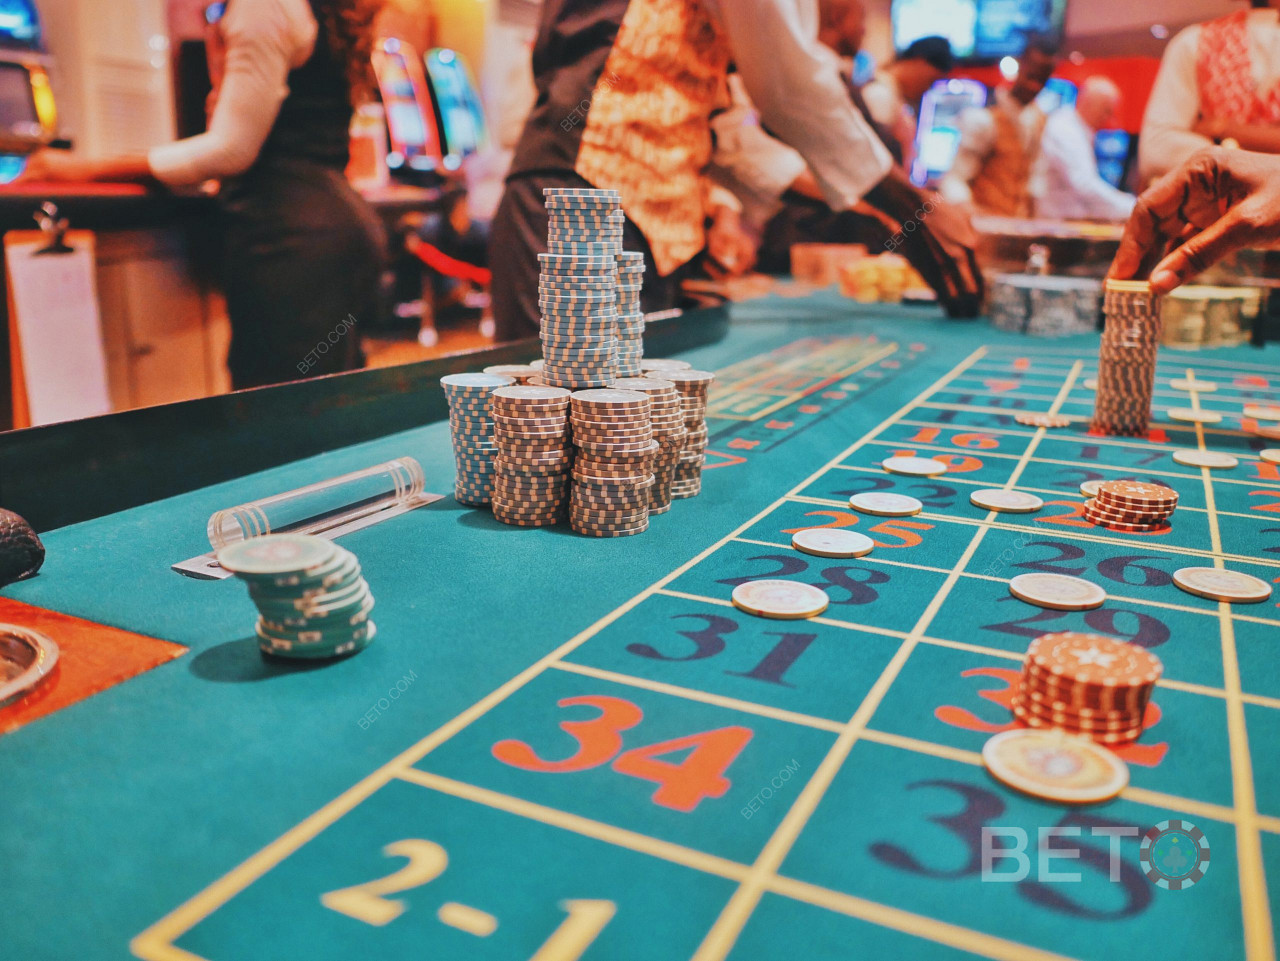 888 er en av de beste kasinooperatørene på markedet. Spill blackjack og andre spill.